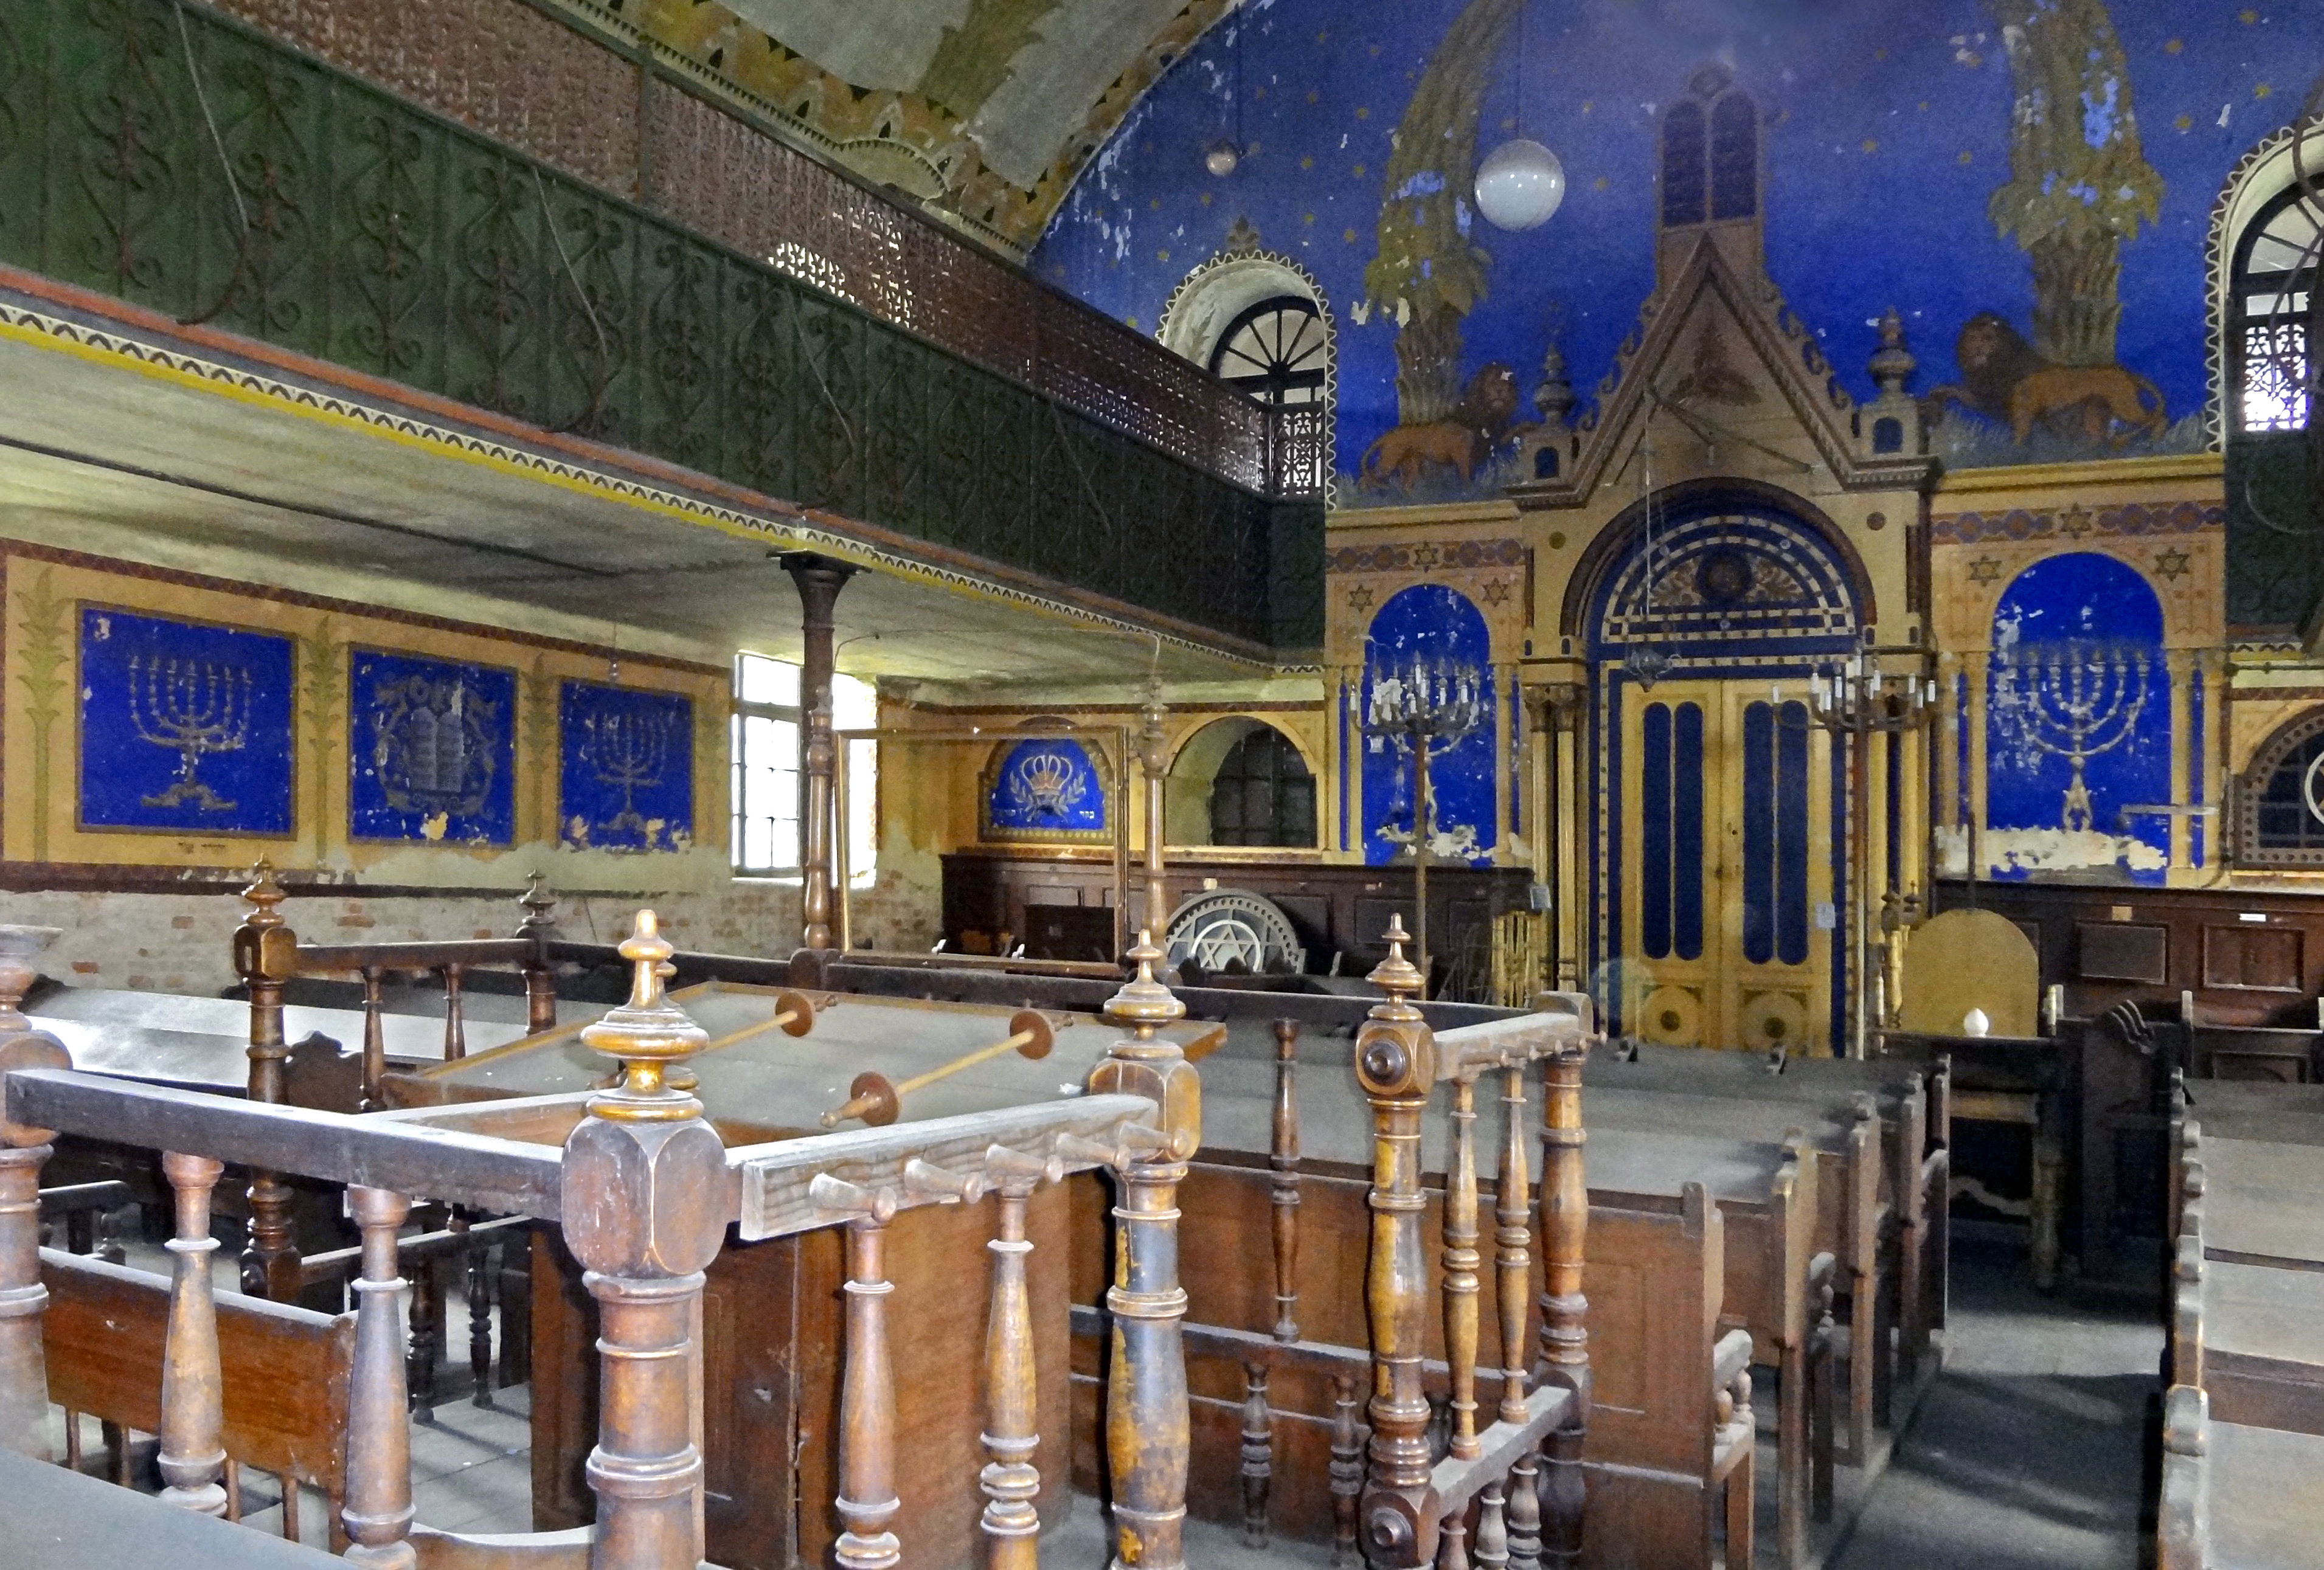 Medias Synagogue, Romania